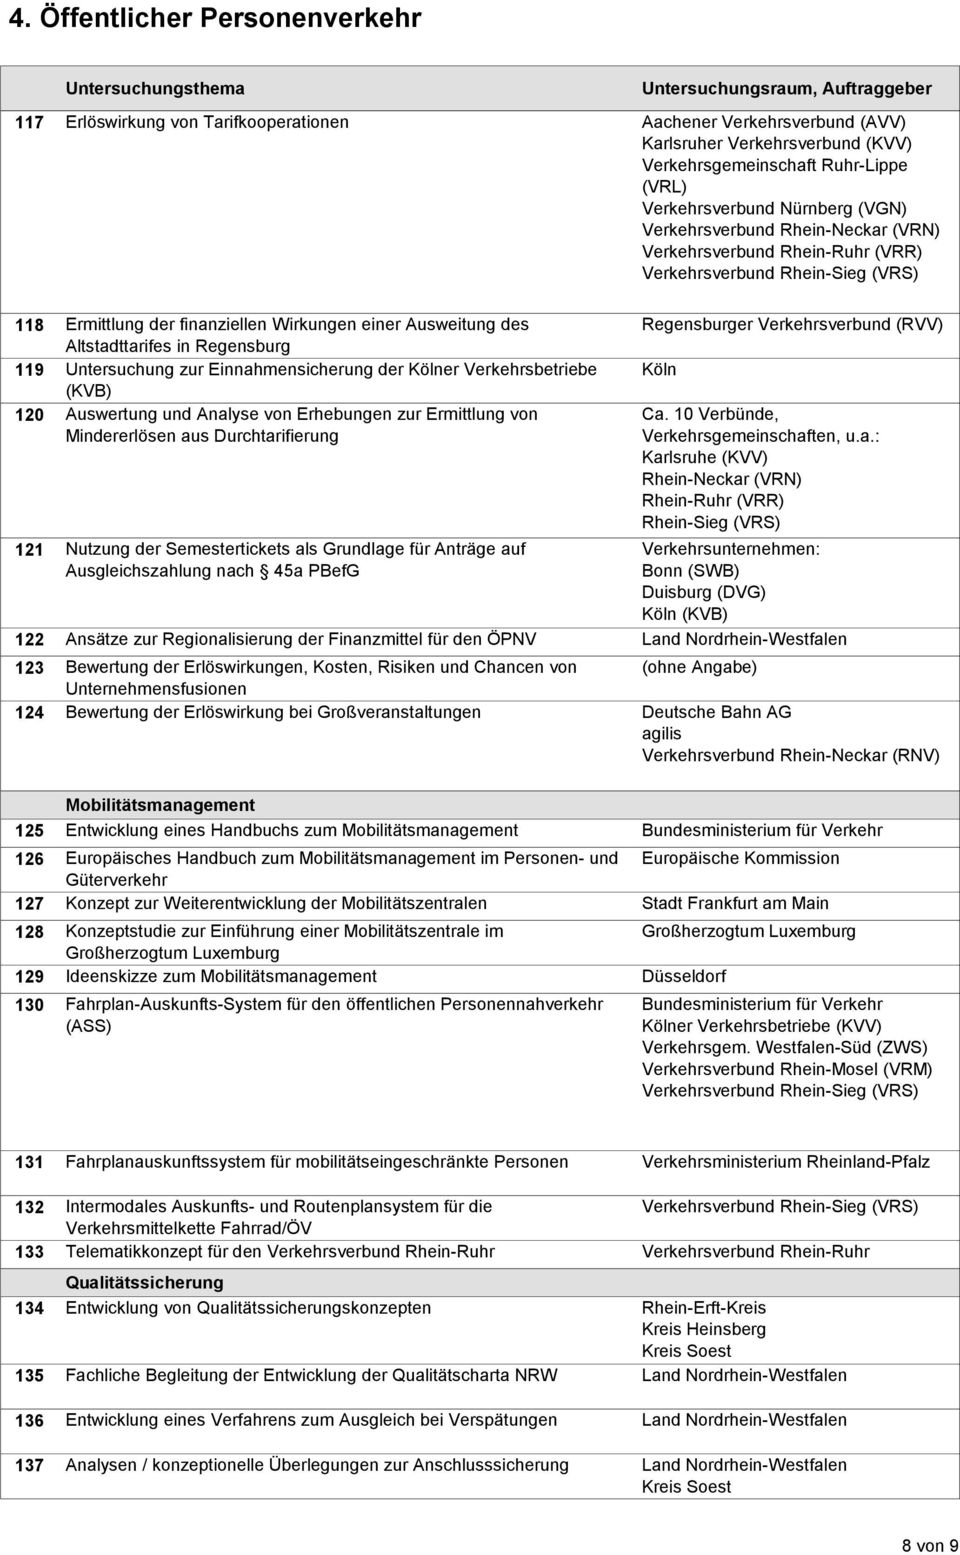 Auswertung und Analyse von Erhebungen zur Ermittlung von Mindererlösen aus Durchtarifierung 121 Nutzung der Semestertickets als Grundlage für Anträge auf Ausgleichszahlung nach 45a PBefG Regensburger